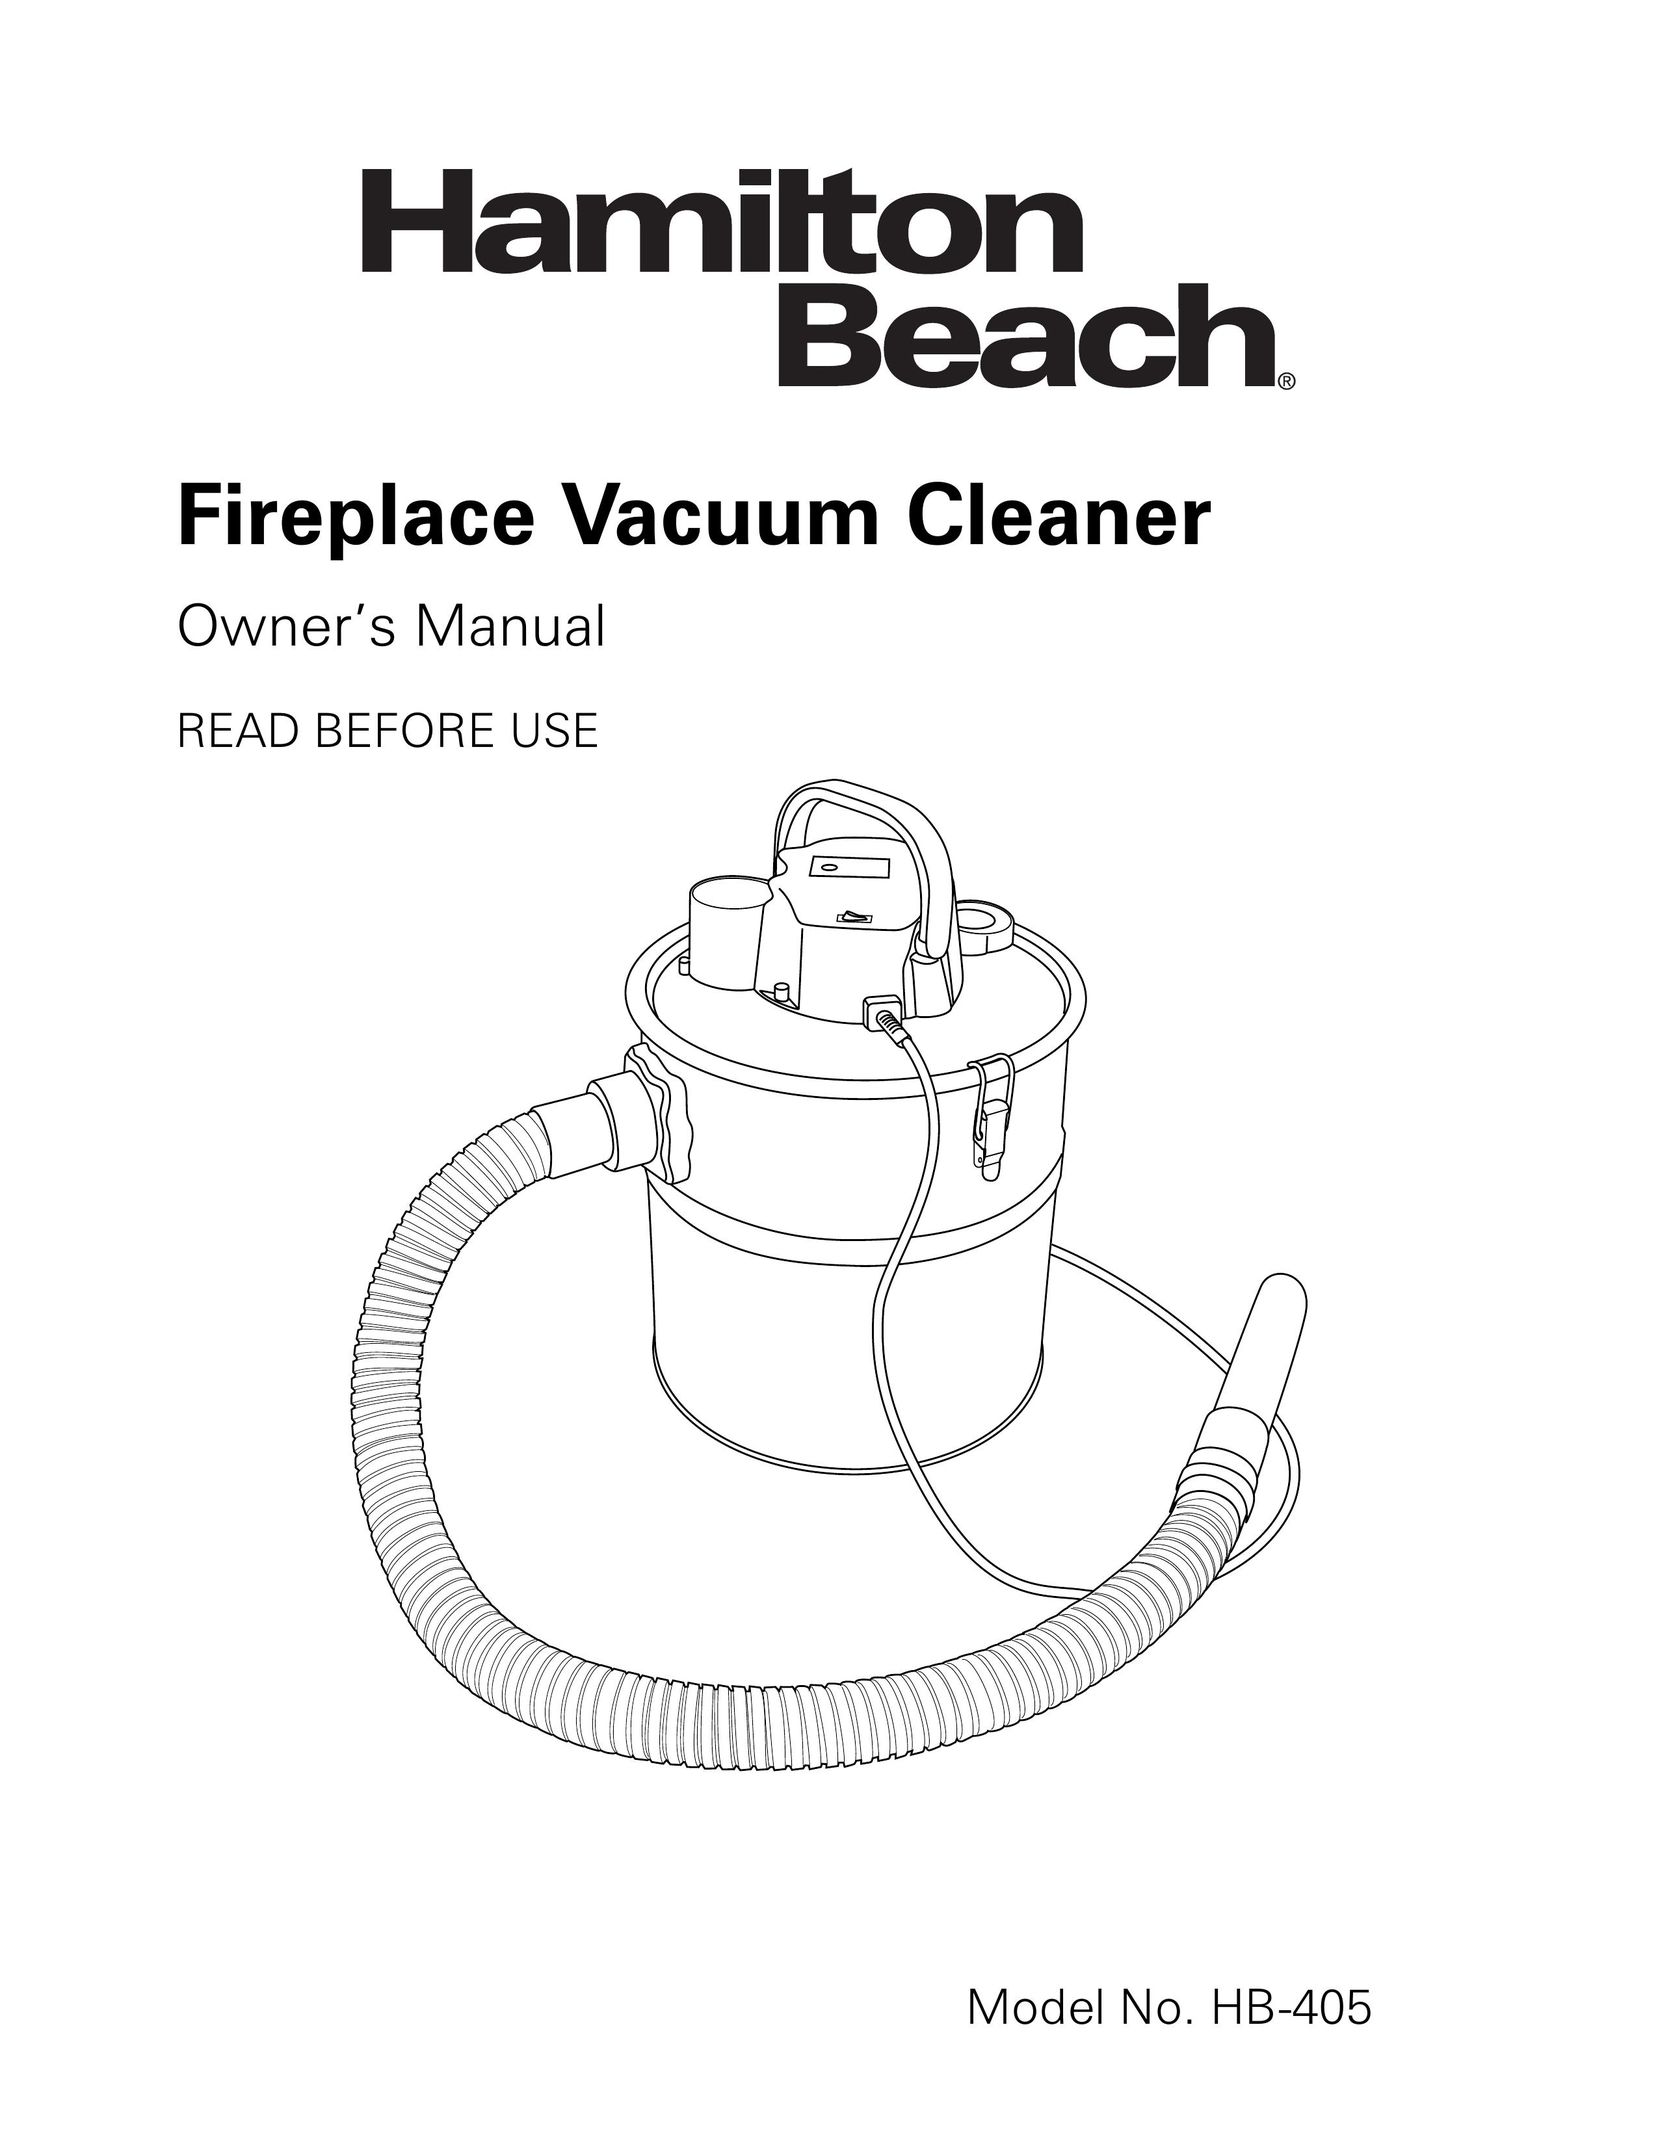 Hamilton Beach HB-405 Vacuum Cleaner User Manual